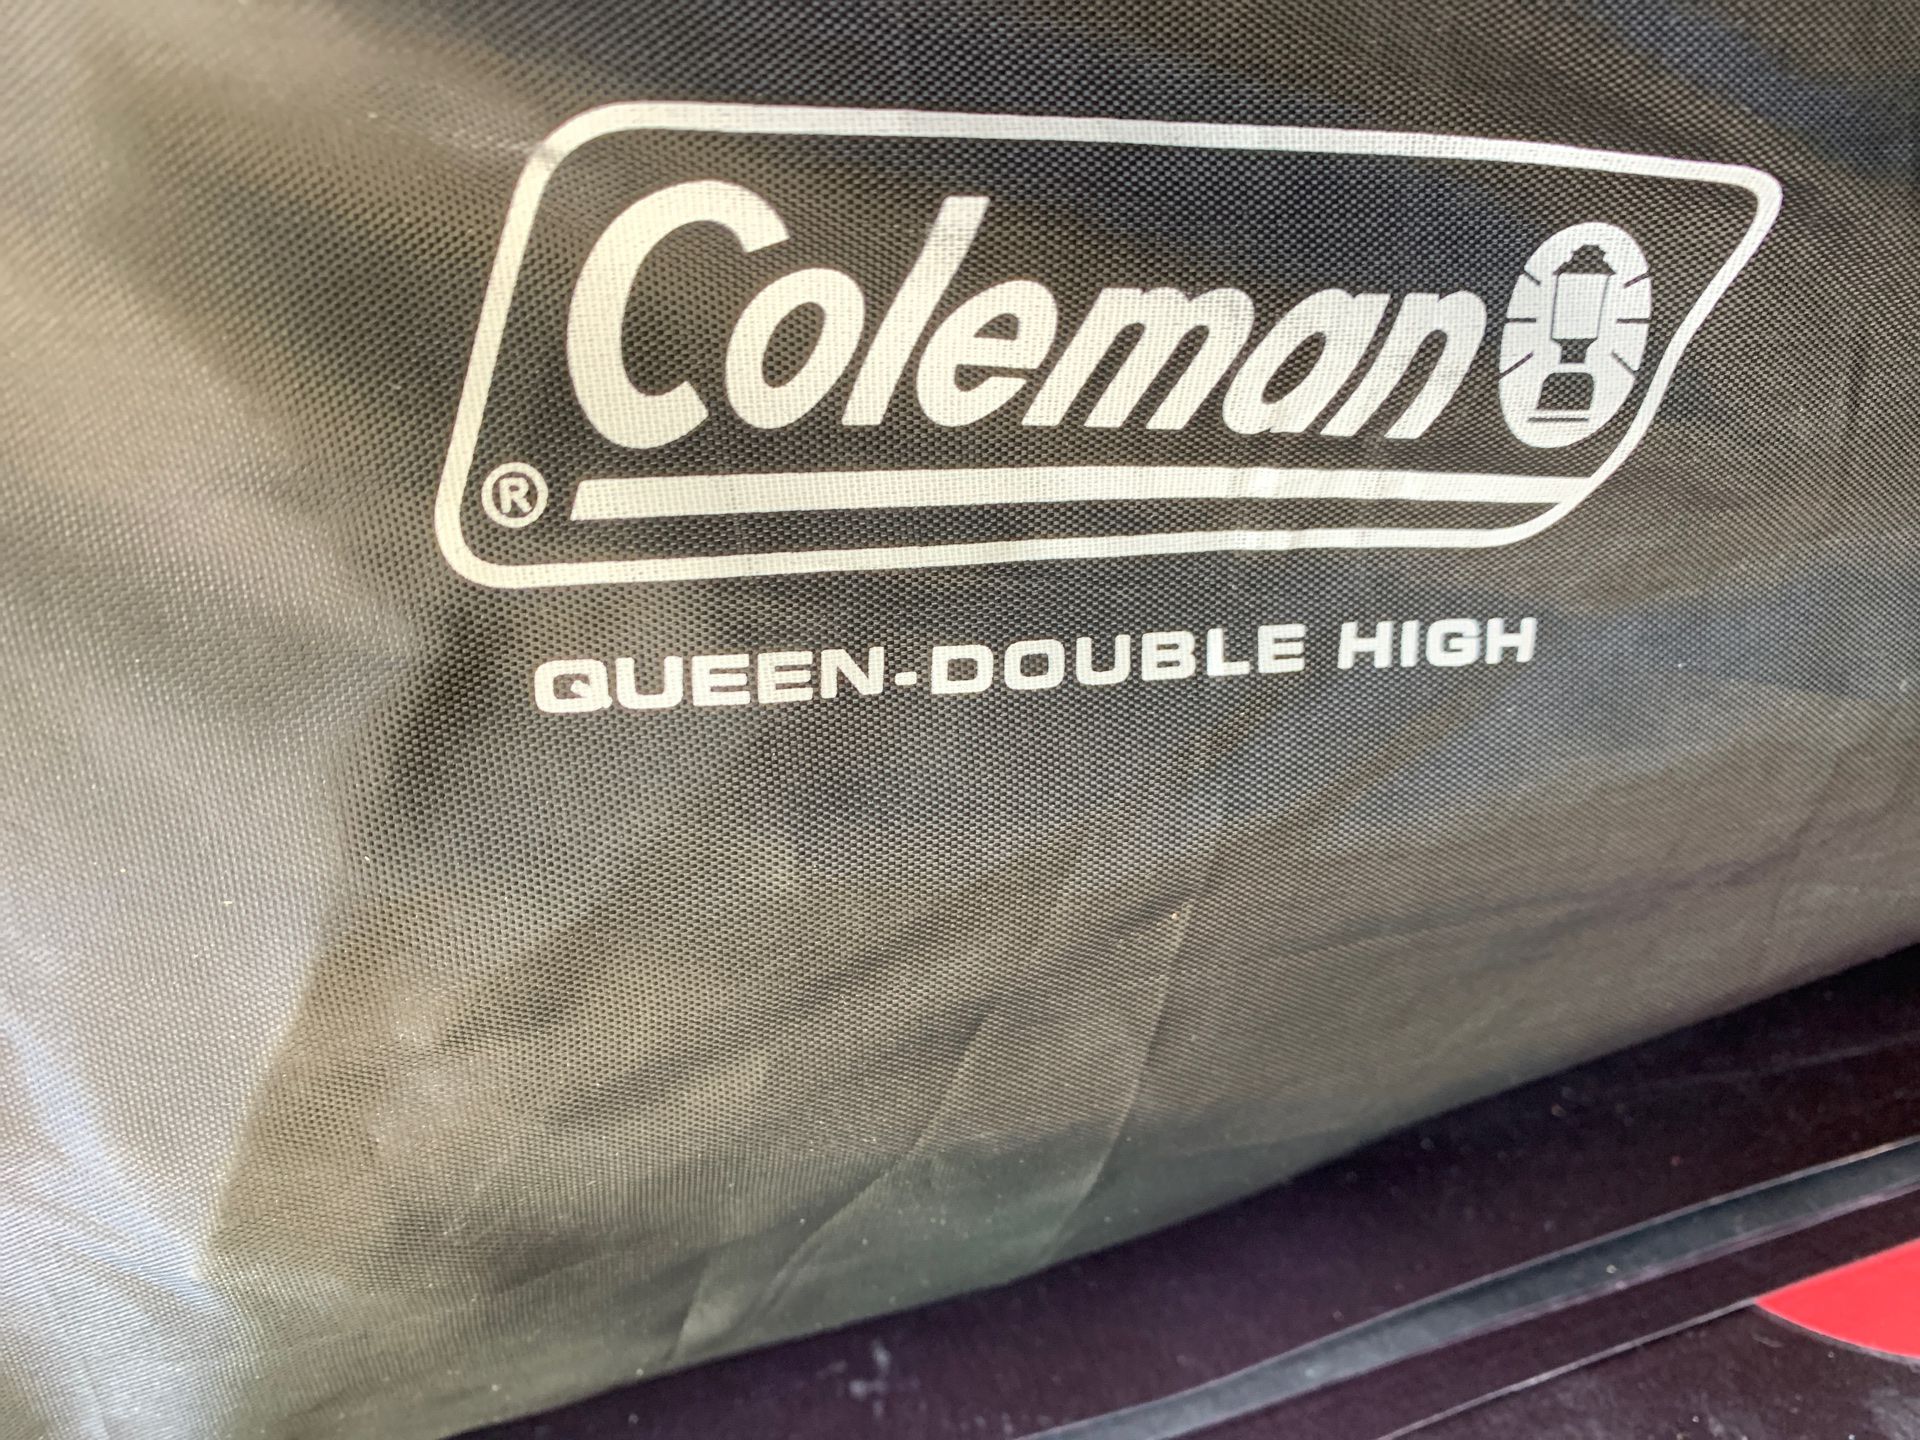 Coleman queen double high air mattress